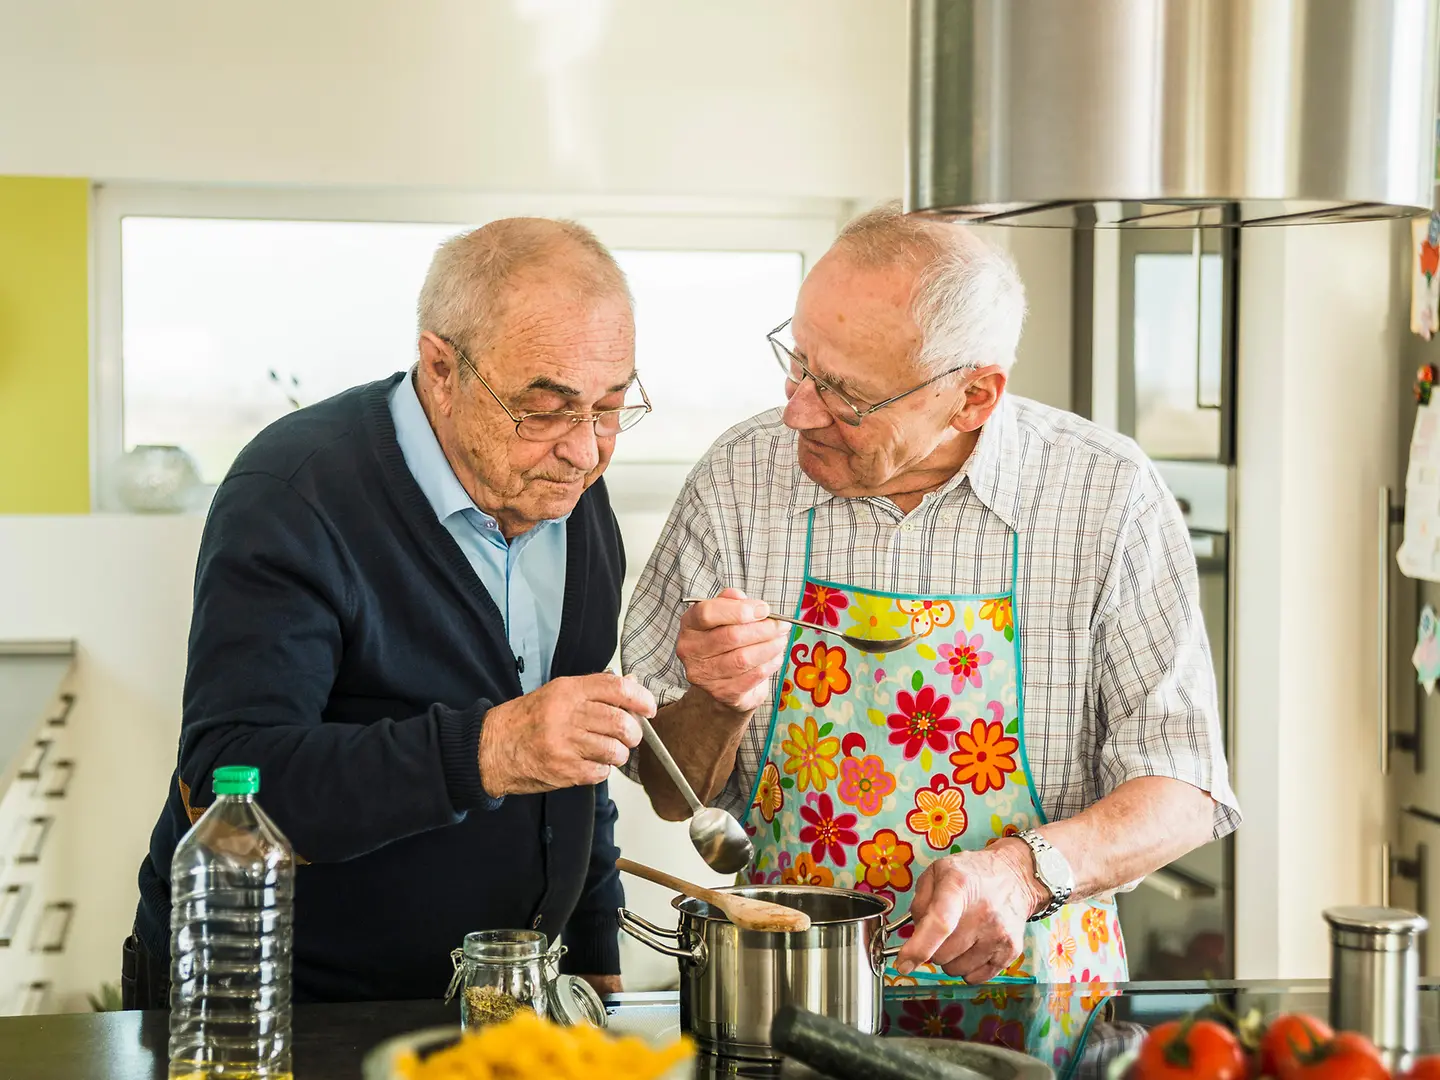 Zu sehen sind zwei ältere Herren beim Kochen 